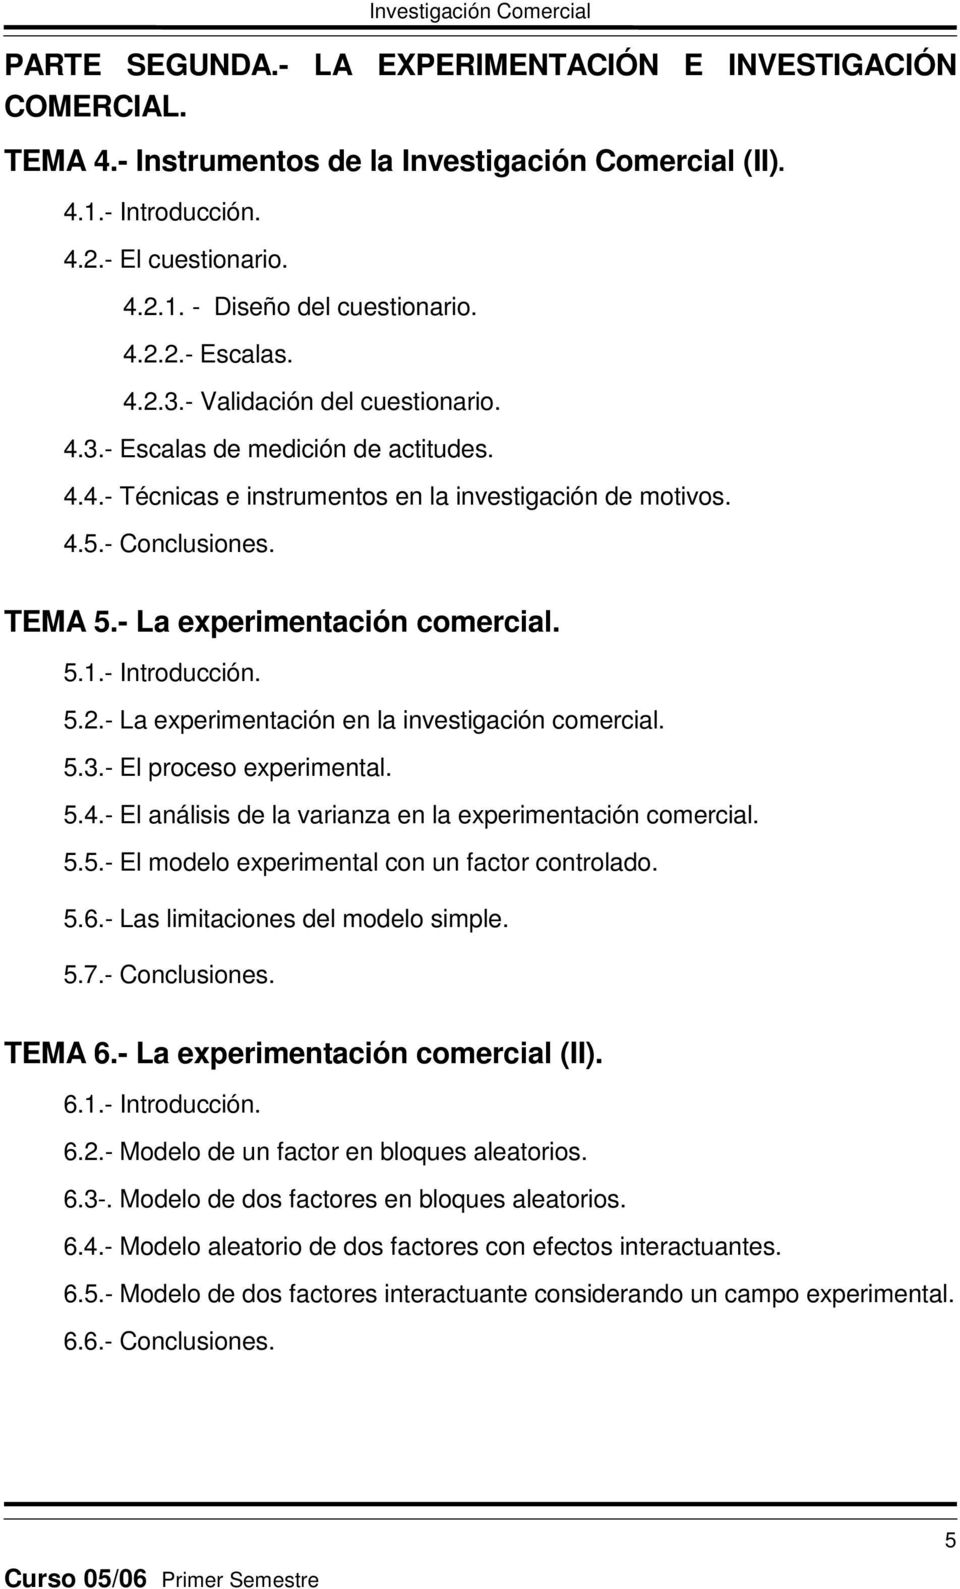 - Introducción. 5.2.- La experimentación en la investigación comercial. 5.3.- El proceso experimental. 5.4.- El análisis de la varianza en la experimentación comercial. 5.5.- El modelo experimental con un factor controlado.